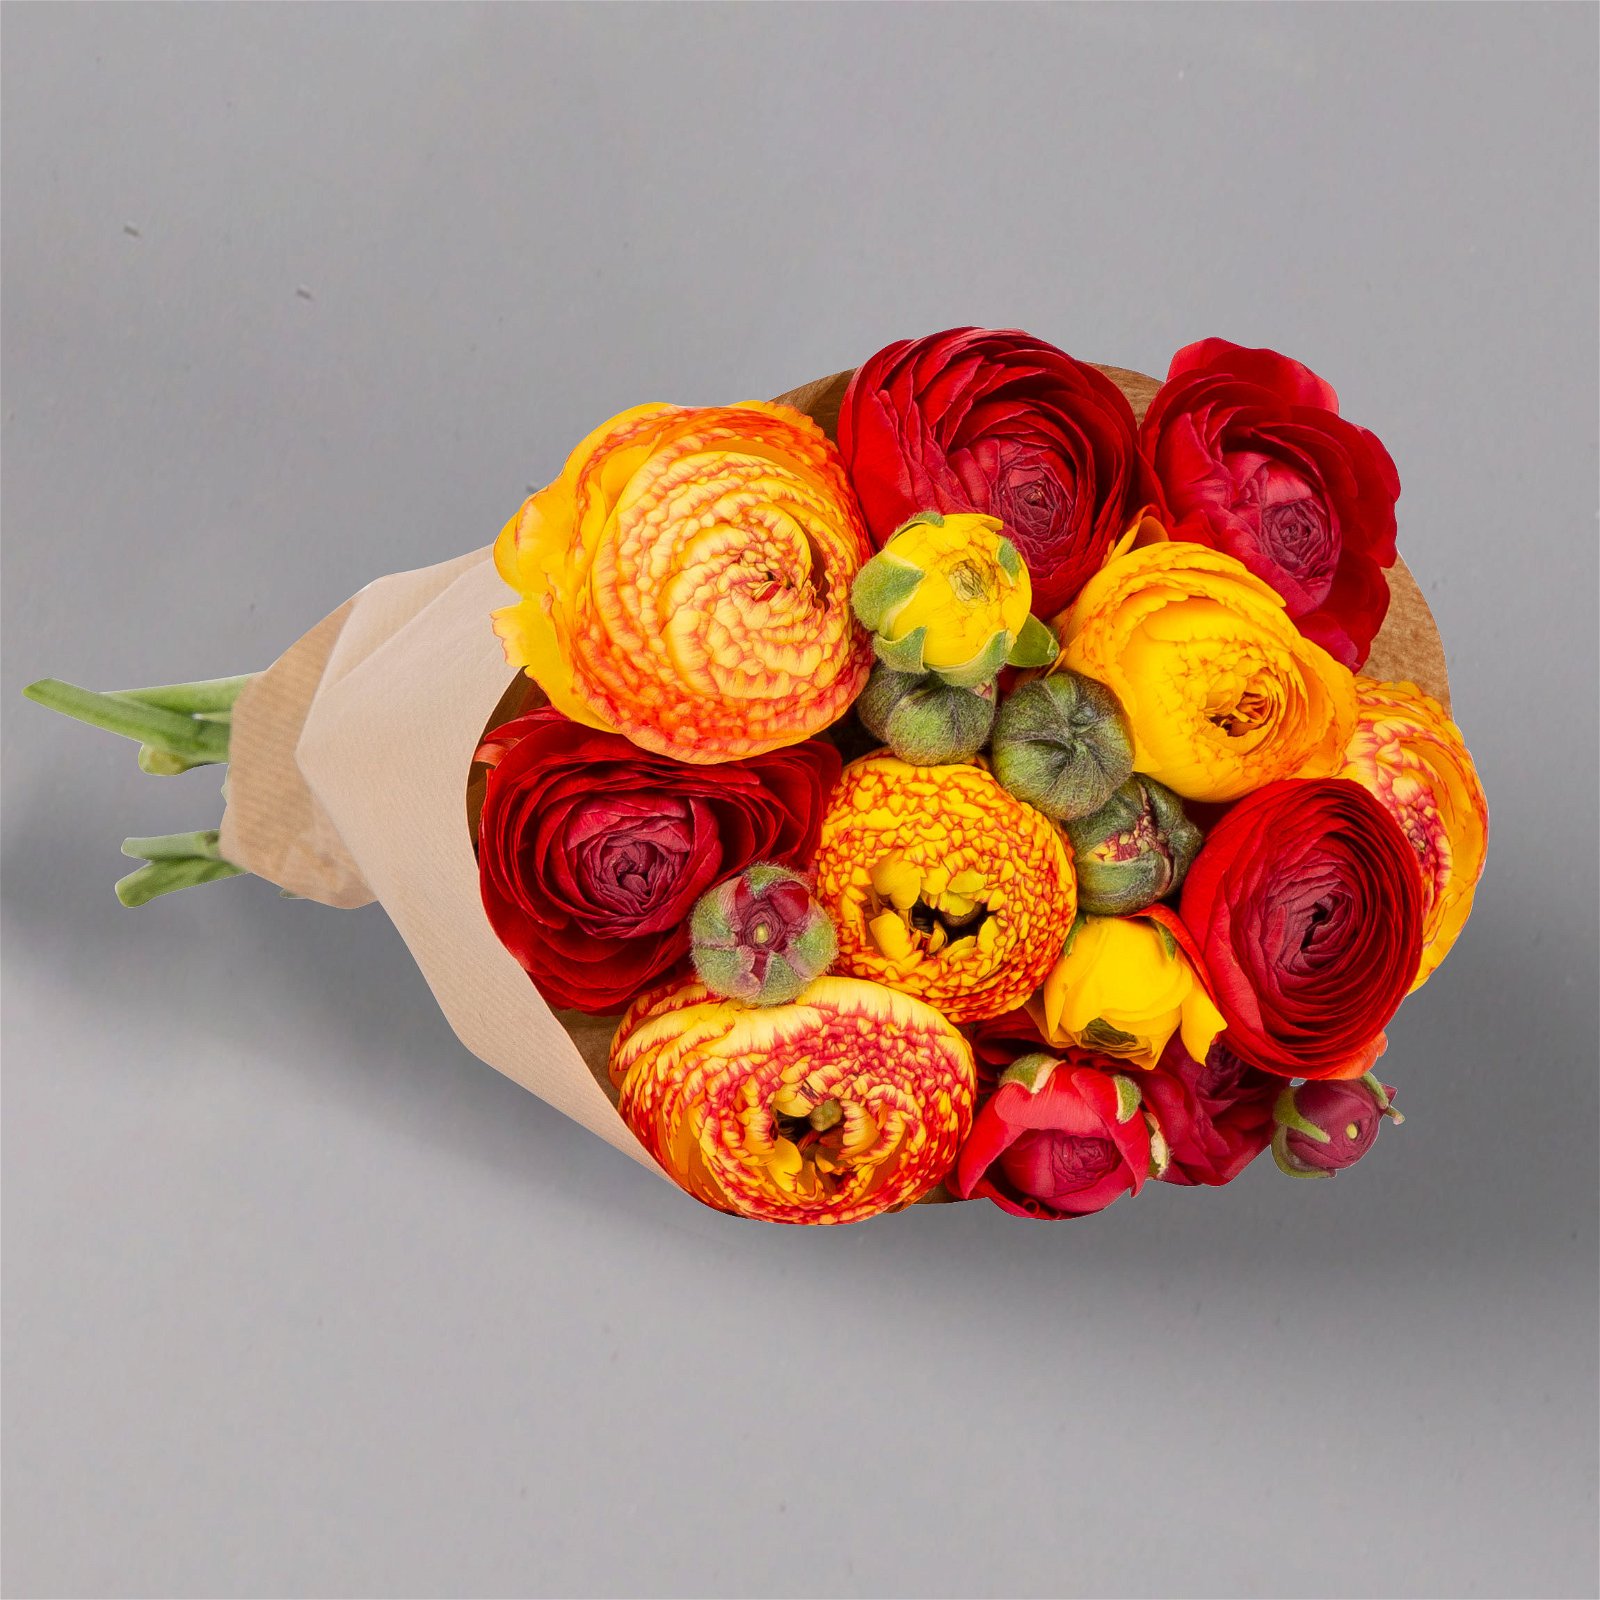 Blumenbund mit Ranunkeln, 10er-Bund, rot & orange, inkl. gratis Grußkarte